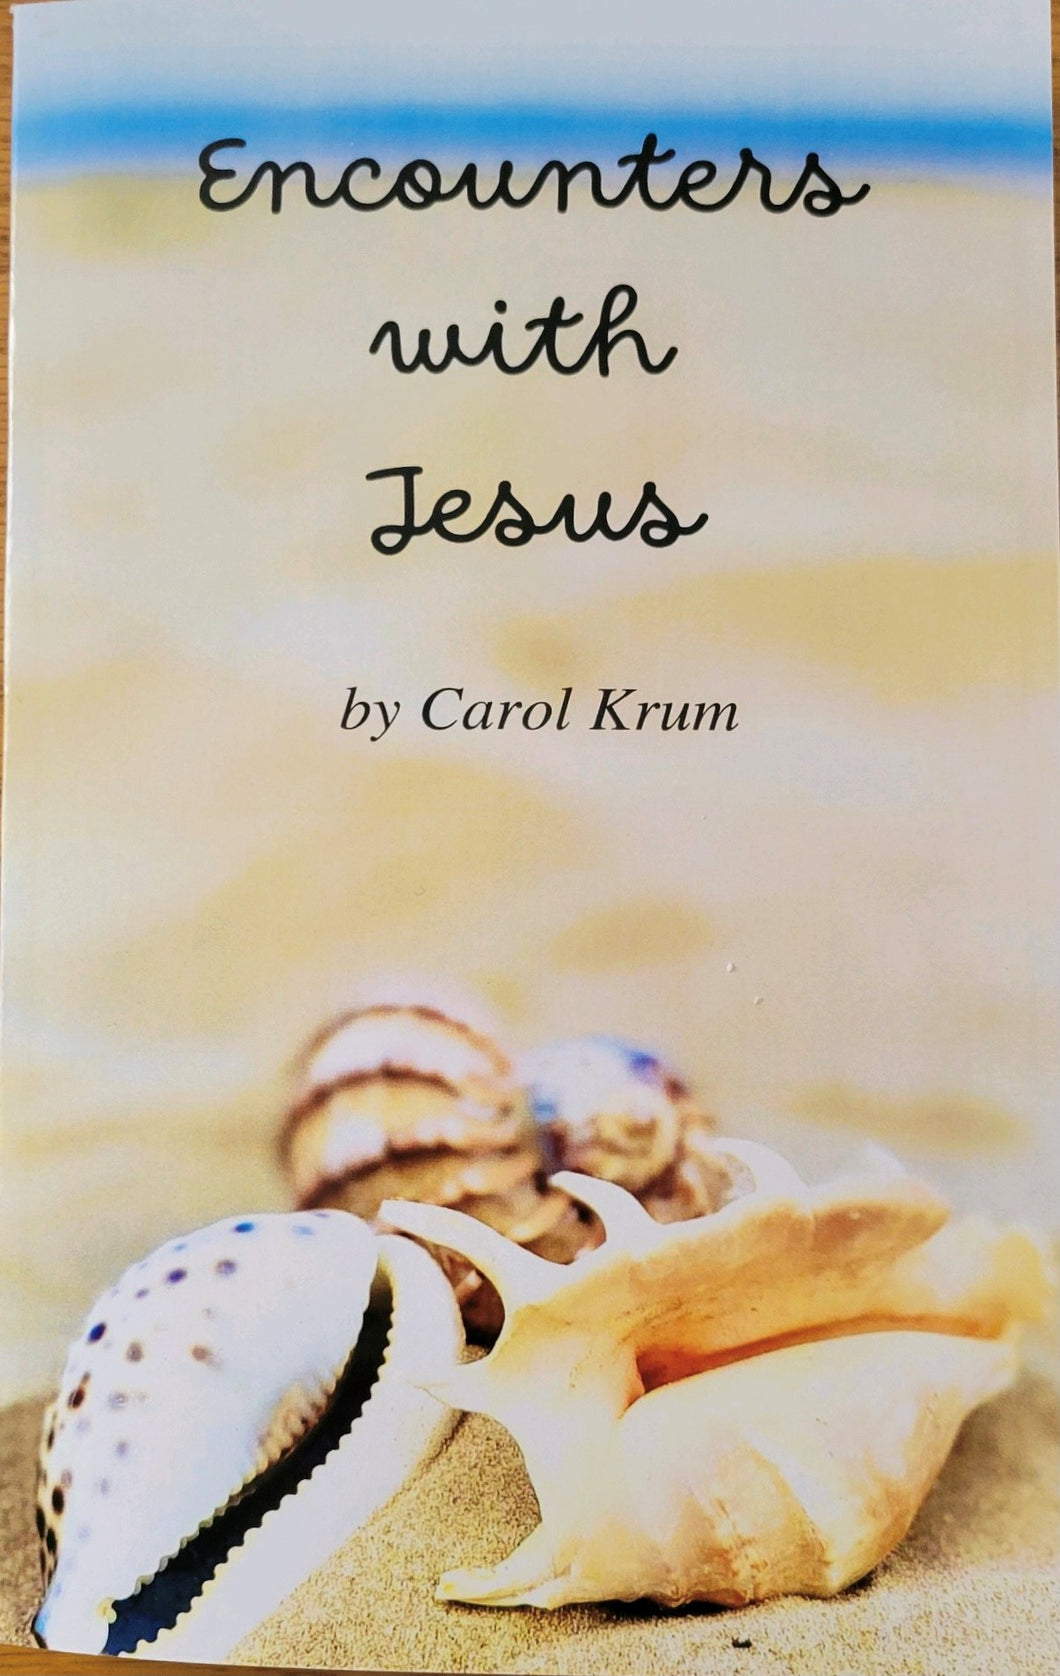 Encounters With Jesus - Carol Krum